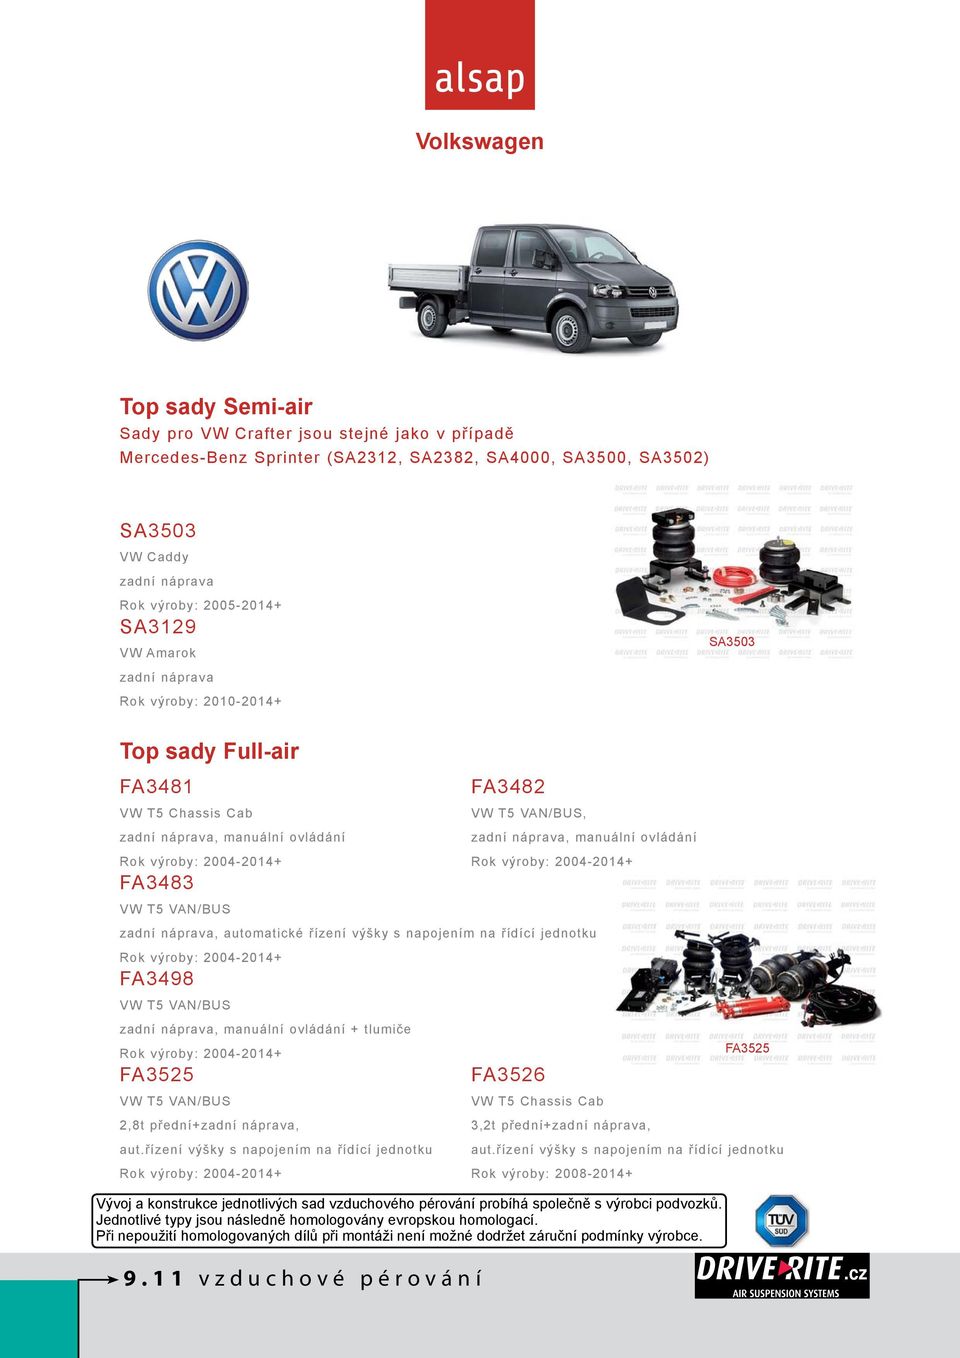 manuální ovládání Rok výroby: 2004-2014+ VW T5 VAN/BUS zadní náprava, automatické řízení výšky s napojením na řídící jednotku Rok výroby: 2004-2014+ FA3498 VW T5 VAN/BUS zadní náprava, manuální